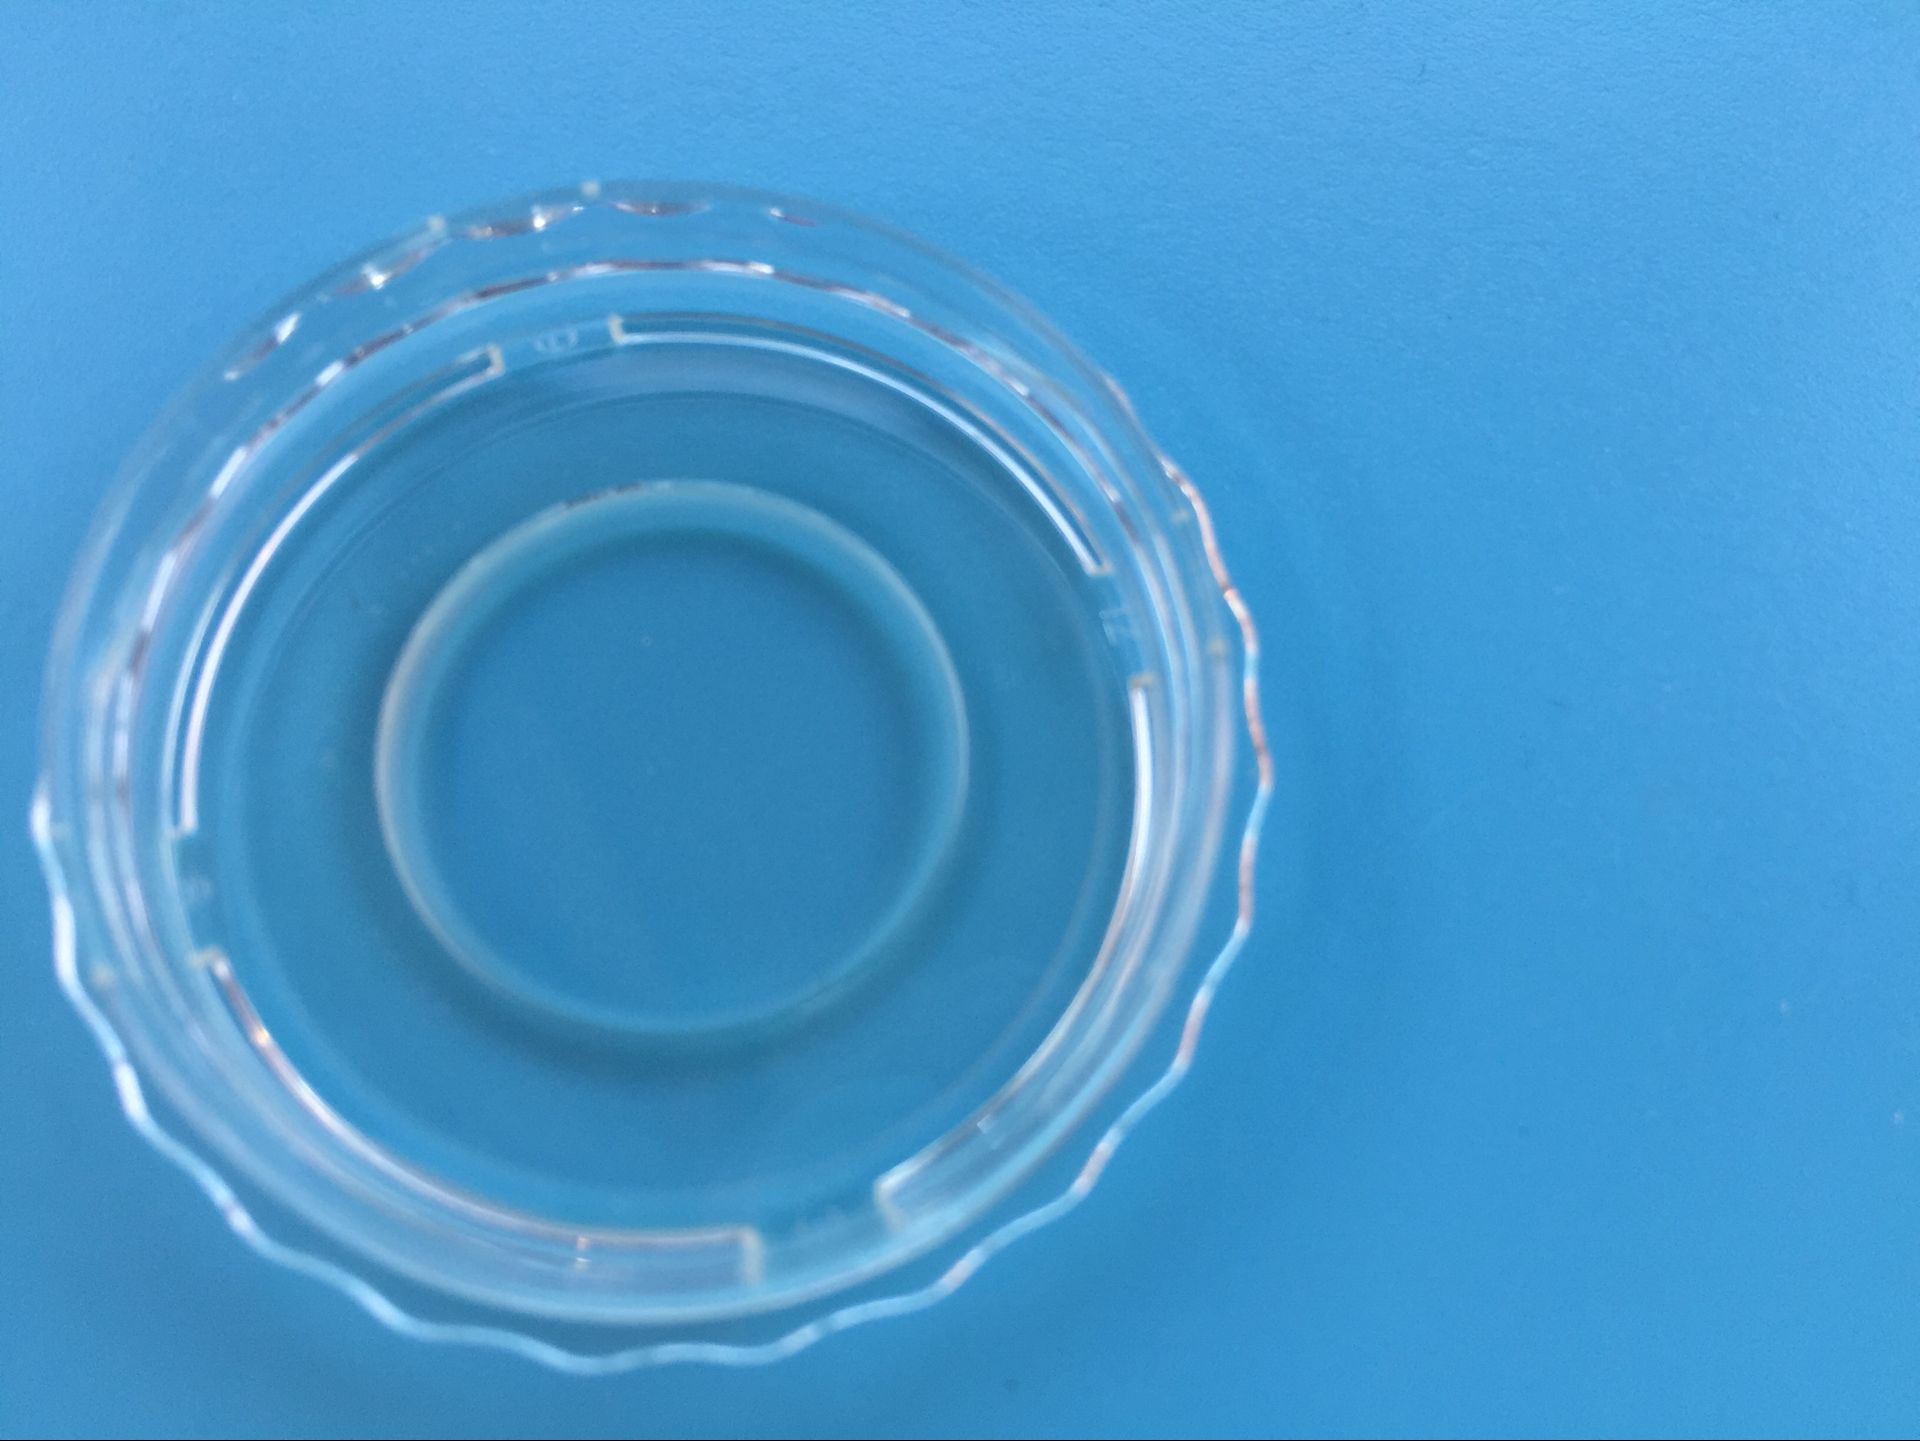 J40101百千生物35mm共聚焦培养皿玻底皿直径10mm荧光显微镜检玻璃培养皿TC处理